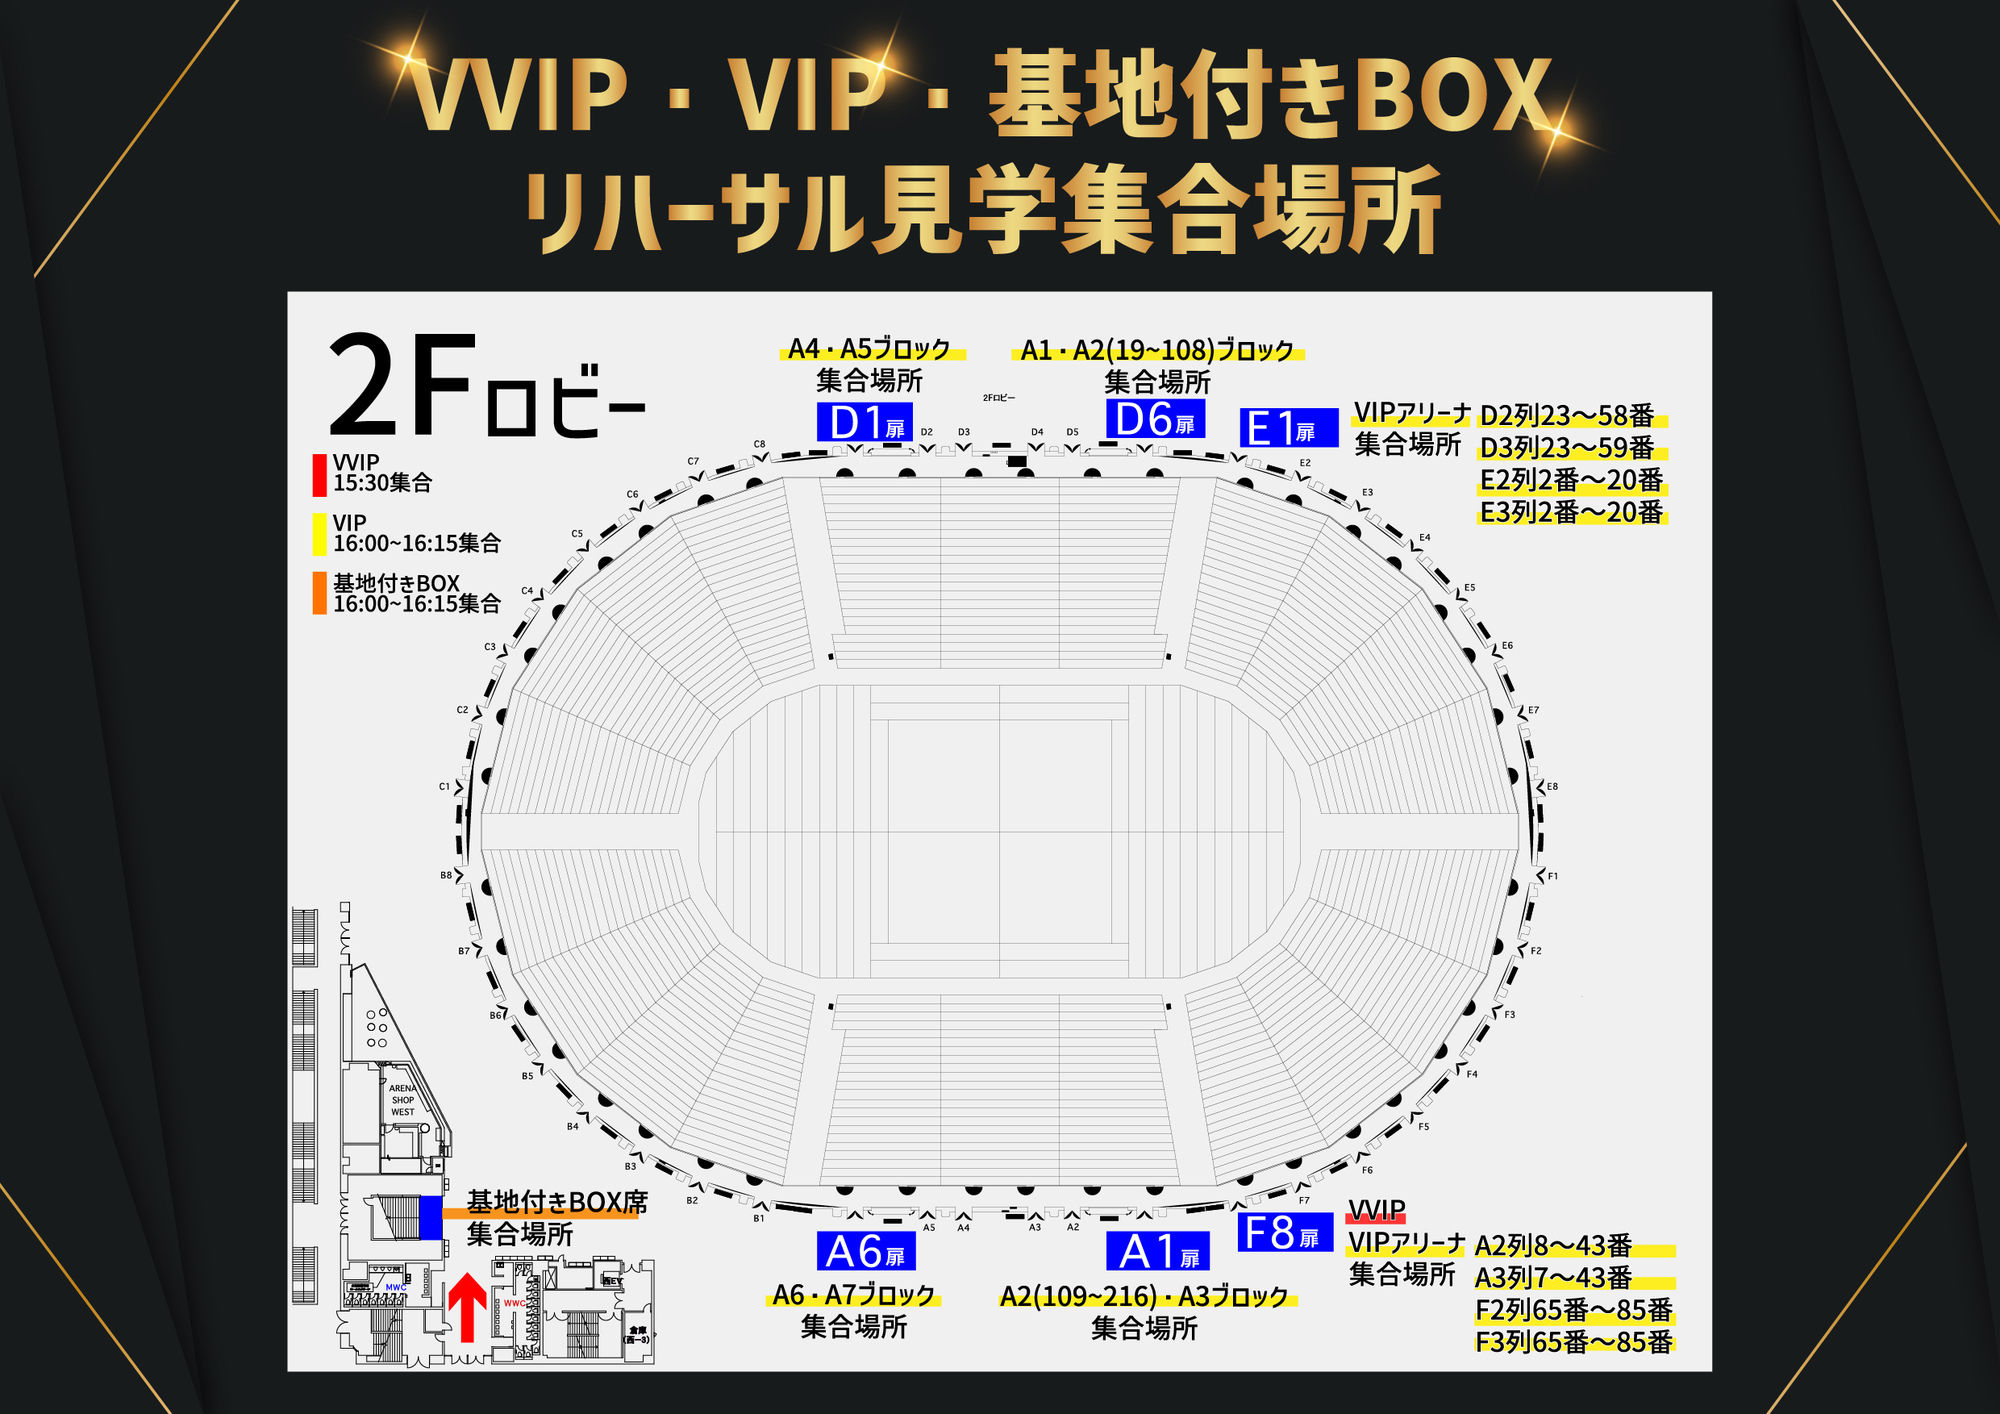 横浜アリーナ】VVIP・VIP・基地付きBOX席のリハーサル見学集合場所公開